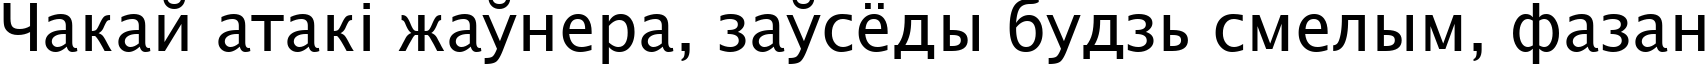 Пример написания шрифтом Lucida Sans Unicode текста на белорусском